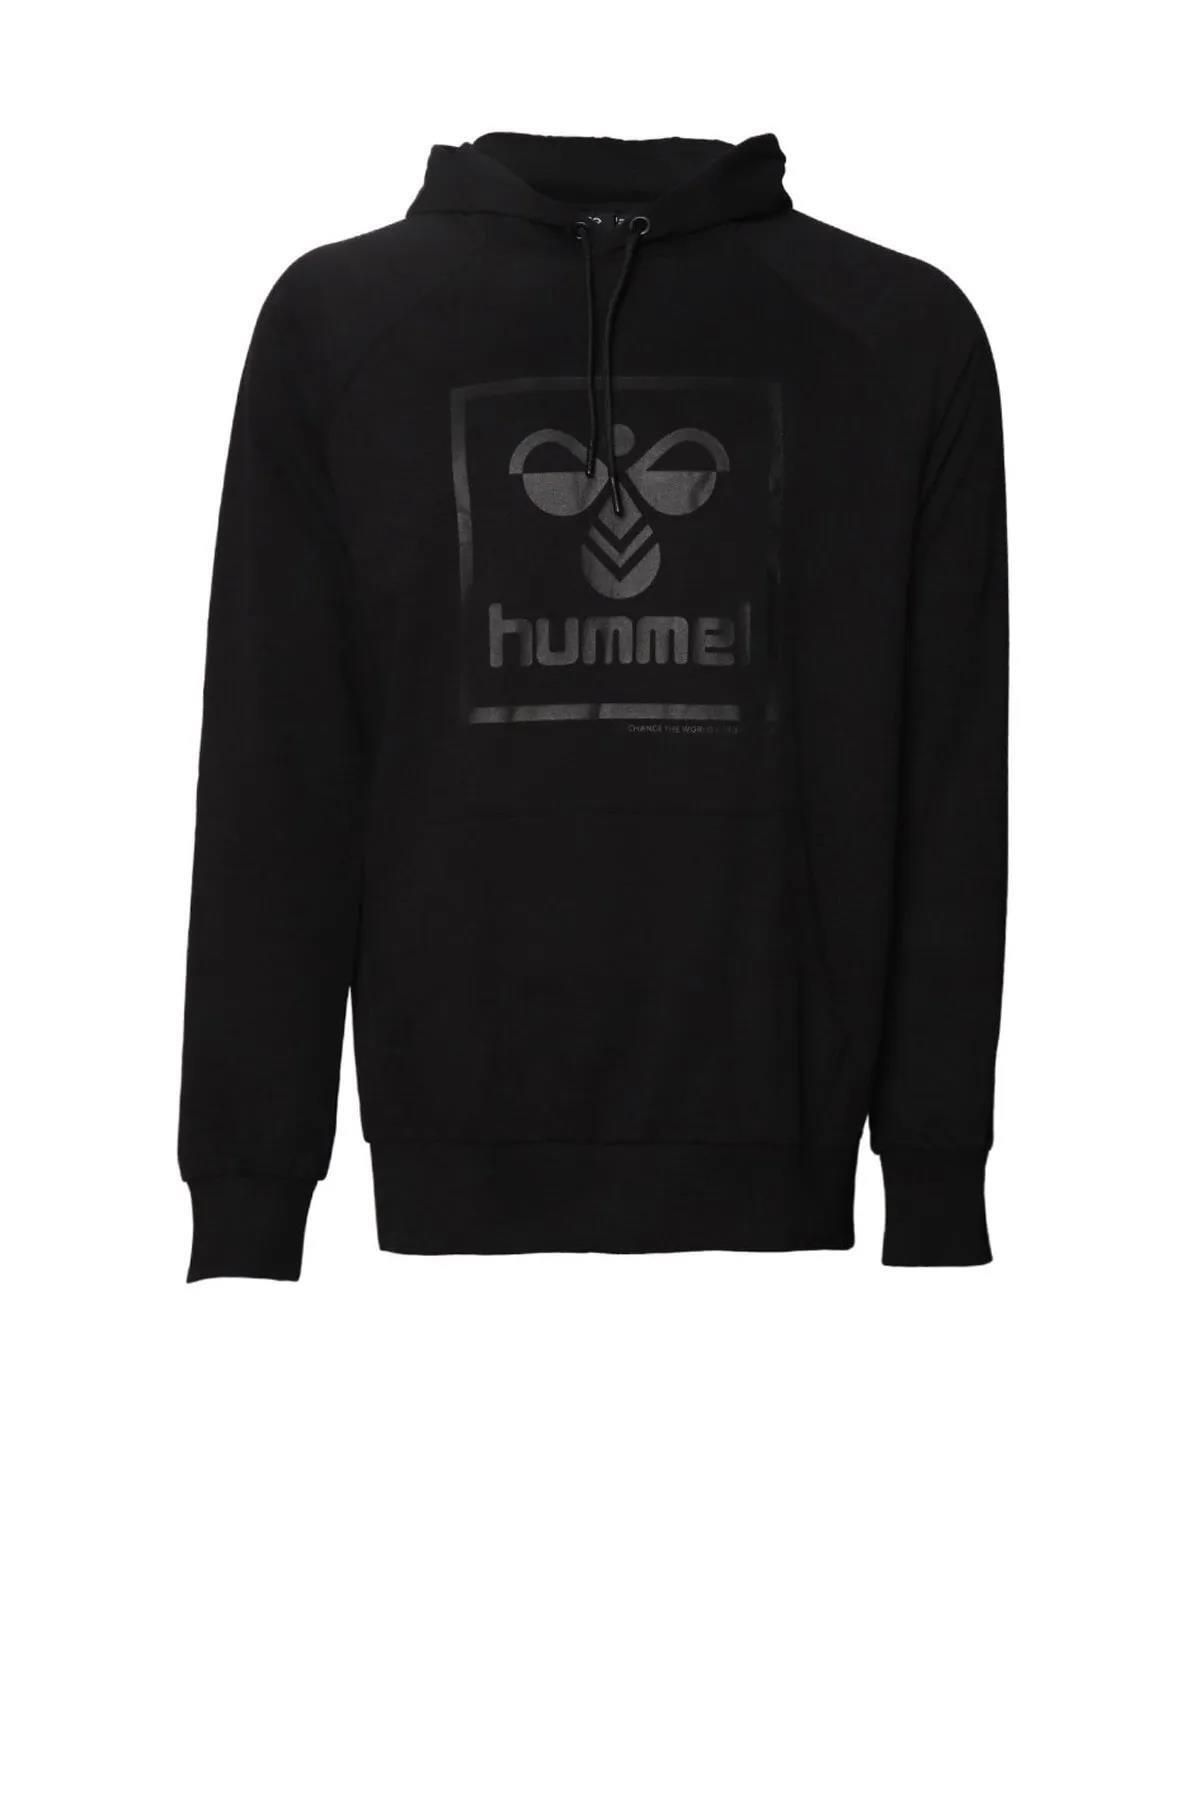 hummel t-isam 2.0 hoodie